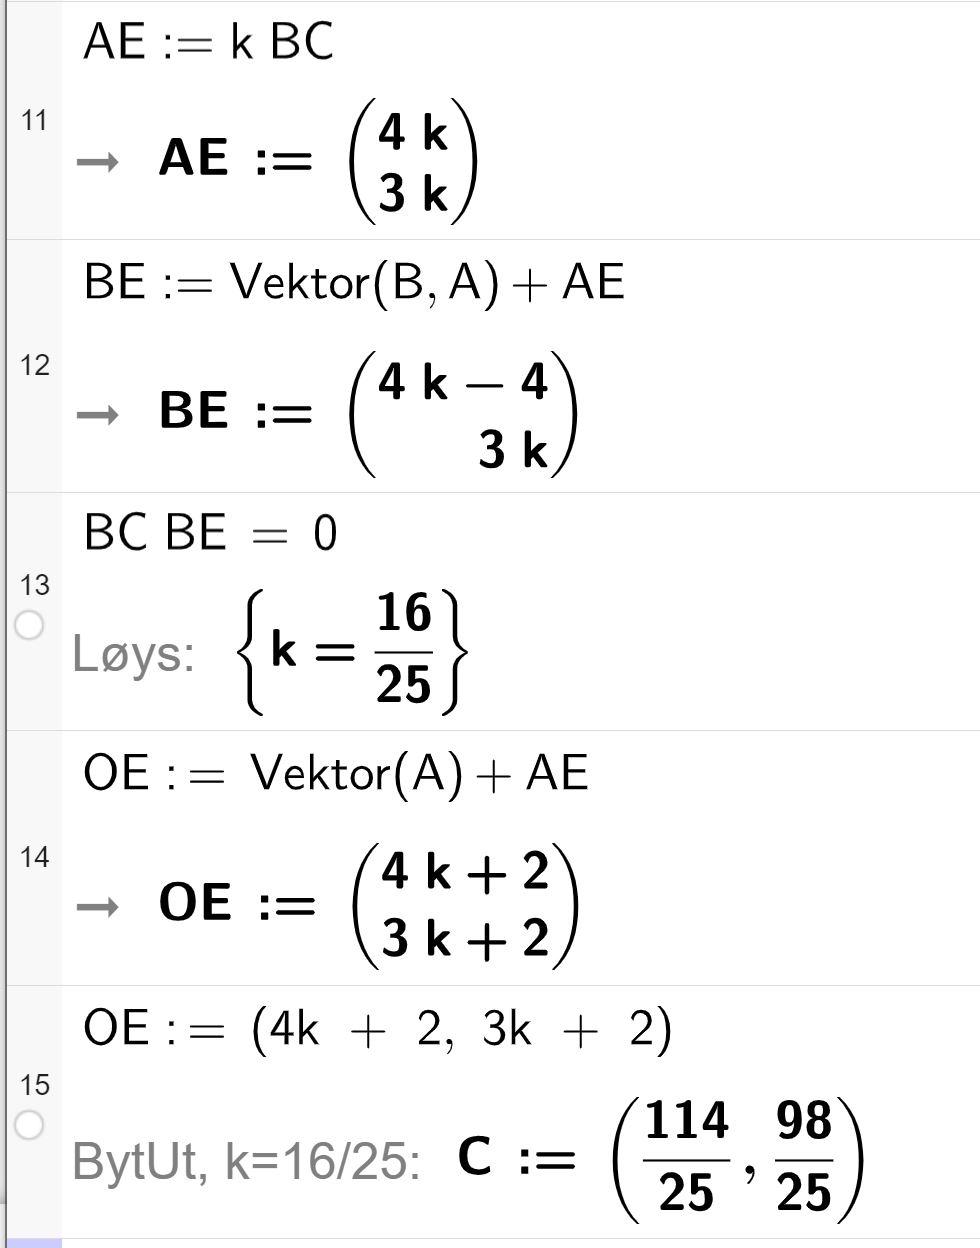 CAS-utrekning i GeoGebra. På linje 11 står det A E kolon er lik k multiplisert med B C. Svaret er gitt som A E kolon er lik parentes 4 k over 3 k parentes slutt. På linje 12 står det B E kolon er lik Vektor parentes B komma A parentes slutt pluss A E. Svaret er gitt som B E kolon er lik parentes 4 k minus 4 over 3 k parentes slutt. På linje 13 står det B C multiplisert med B E er lik 0. Svaret med Løys er k er lik 16 delt på 25. På linje 14 står det O E kolon er lik Vektor parentes A parentes slutt pluss A E. Svaret er gitt som O E kolon er lik parentes 4 k pluss 2 over 3 k pluss 2 parentes slutt. På linje 15 står det O E kolon er lik parentes 4 k pluss 2 komma 3 k pluss 2 parentes slutt. Under dette er det skrive inn ByttUt komma k er lik 16 delt på 25 kolon C kolon er lik parentes 114 delt på 25 komma 98 delt på 25 parentes slutt. Skjermutklipp. 